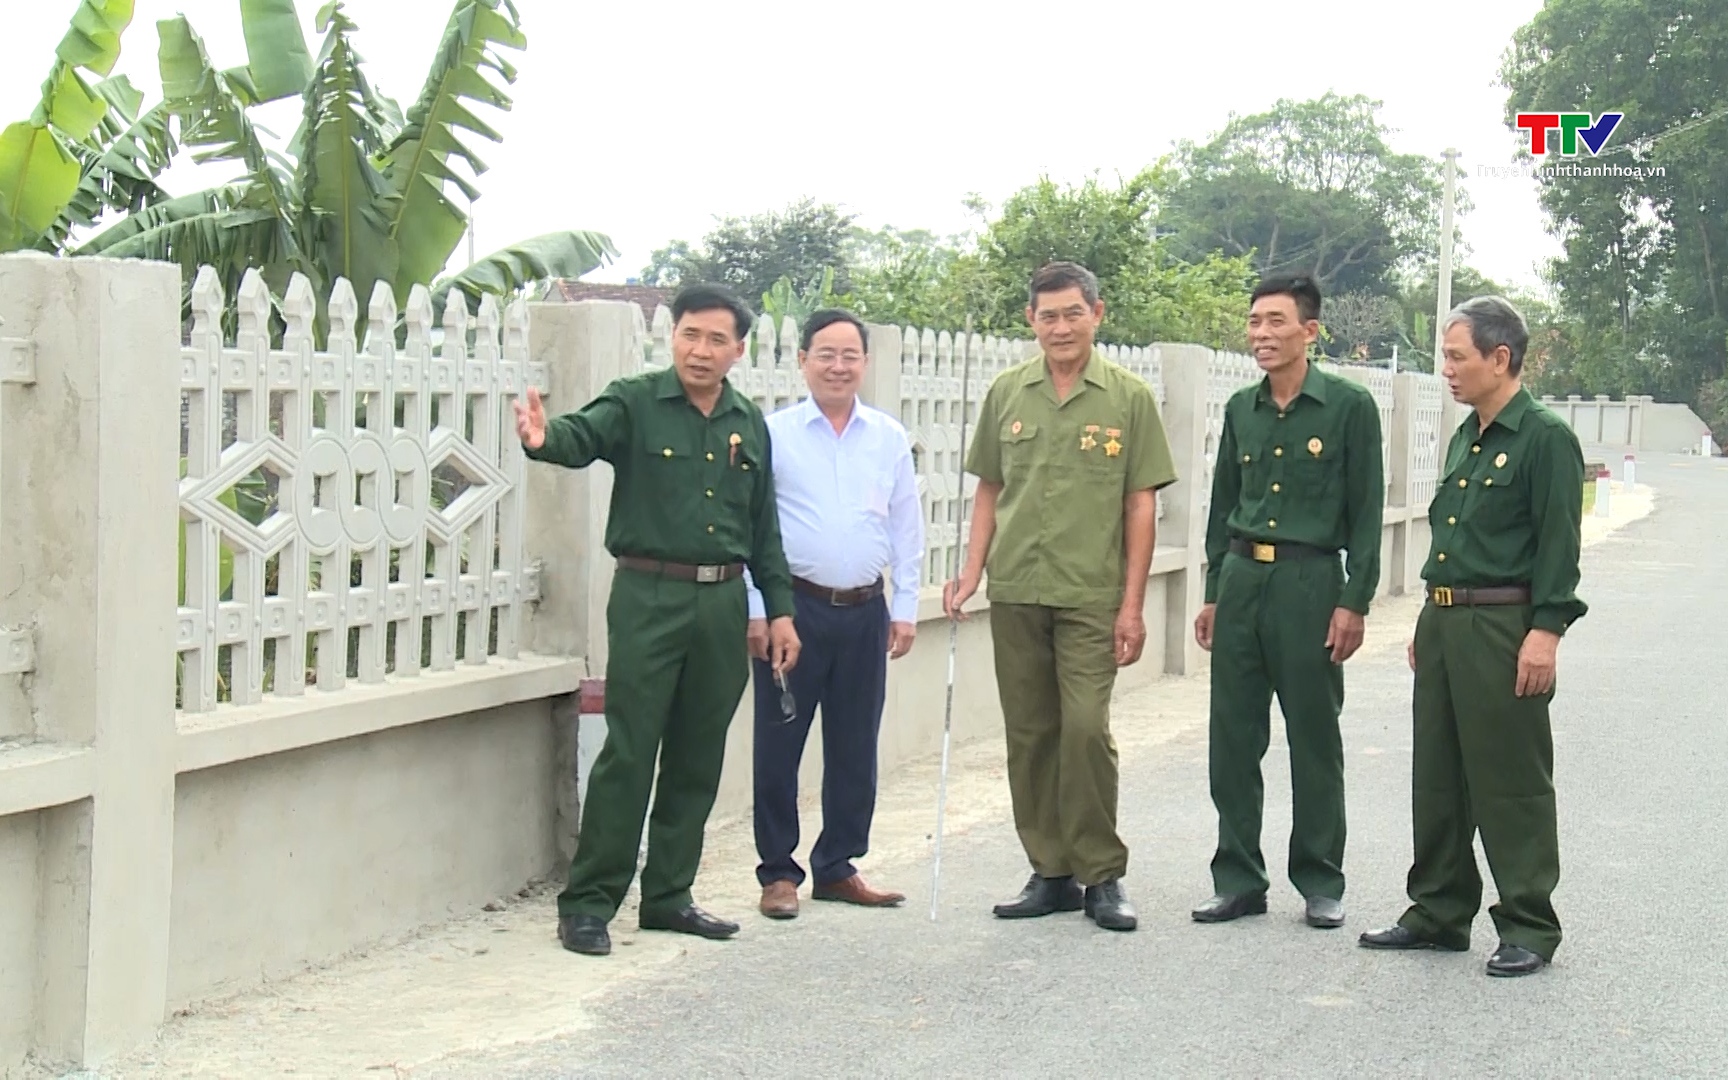 Cựu chiến binh Thanh Hóa chung tay xây dựng nông thôn mới